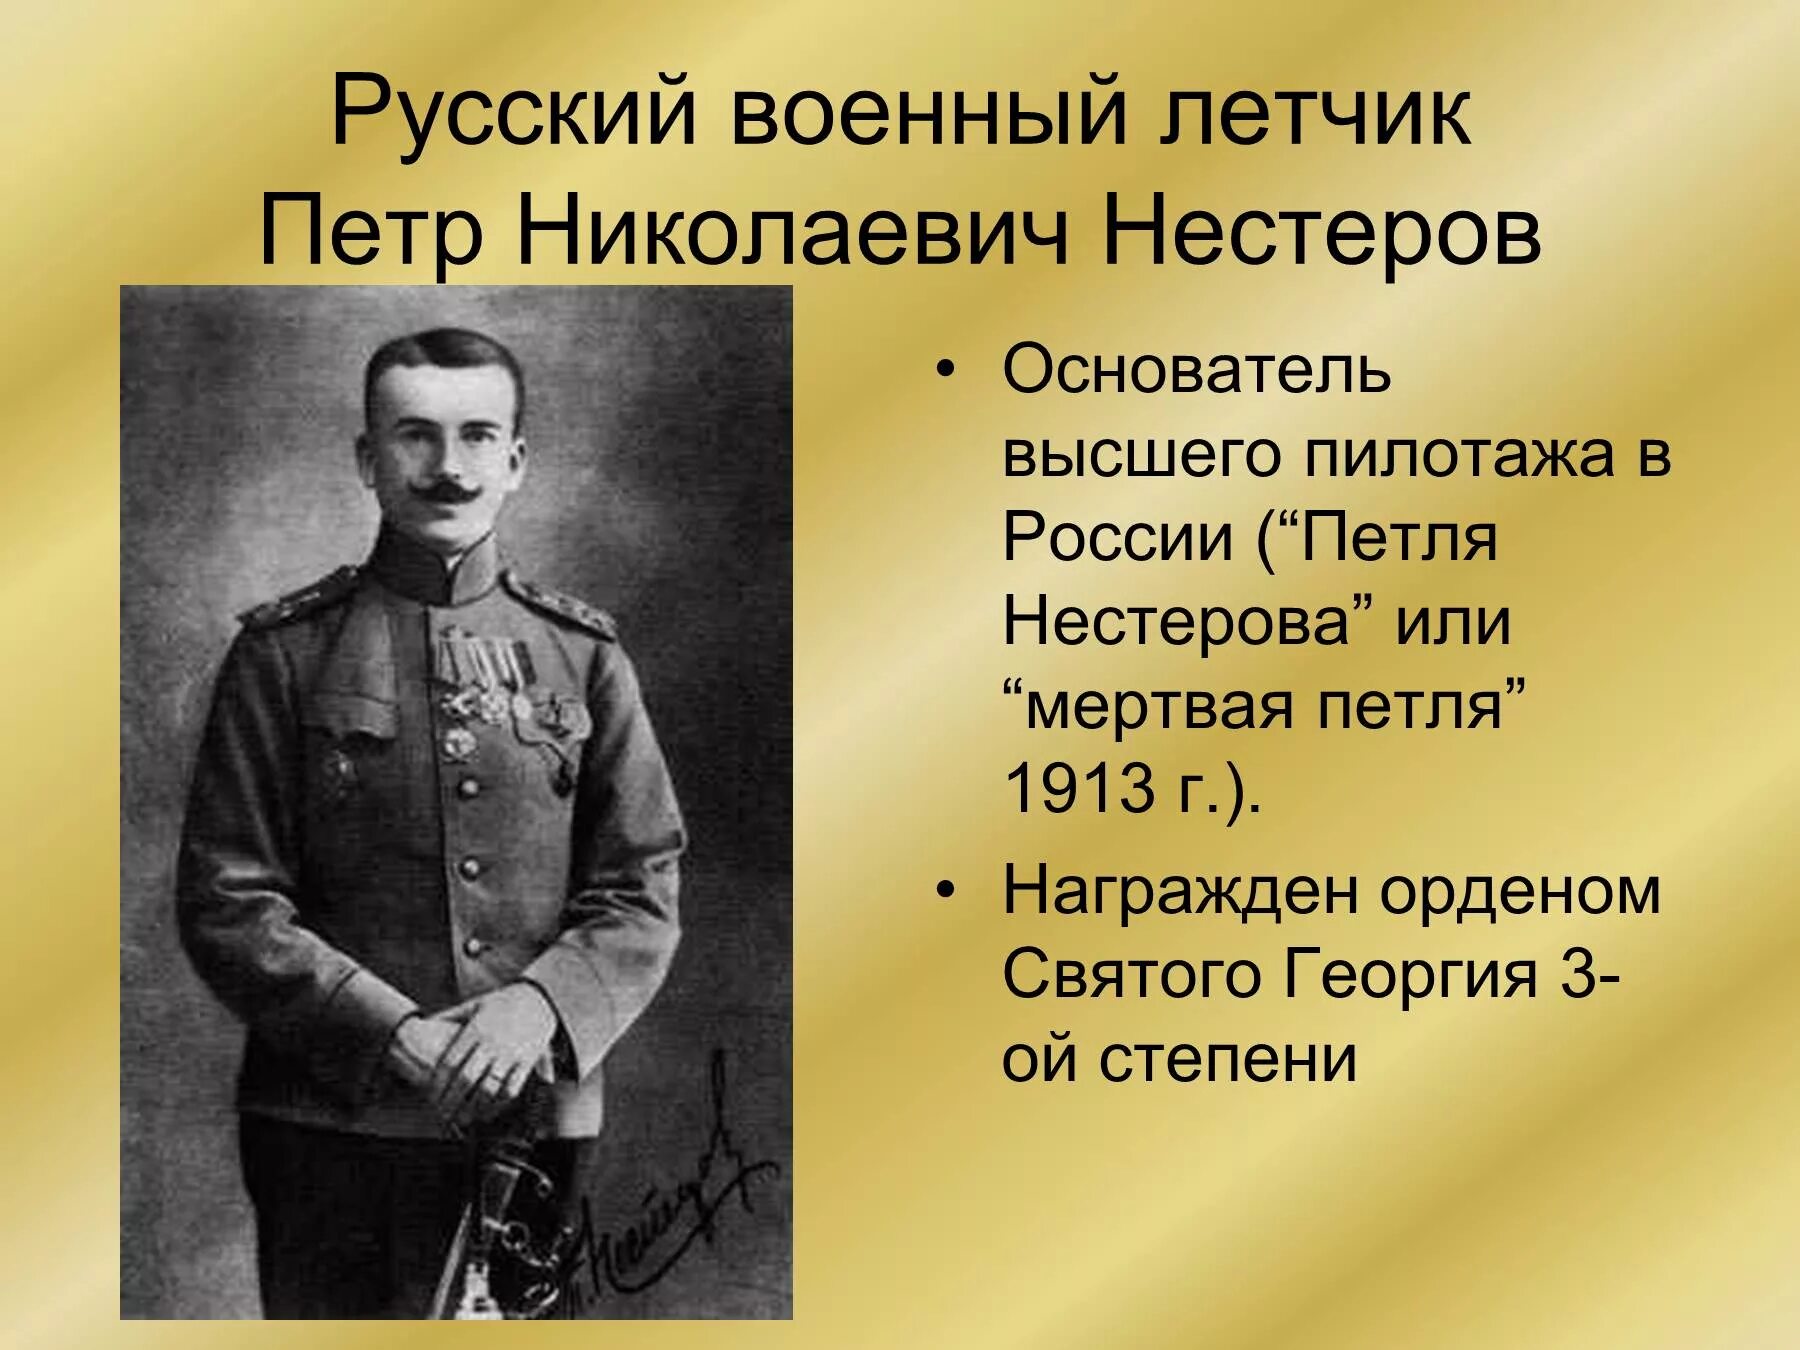 Русские герои первой мировой войны Нестеров. Российские герои первой мировой войны 1914-1918. Герои 1 мировой войны.